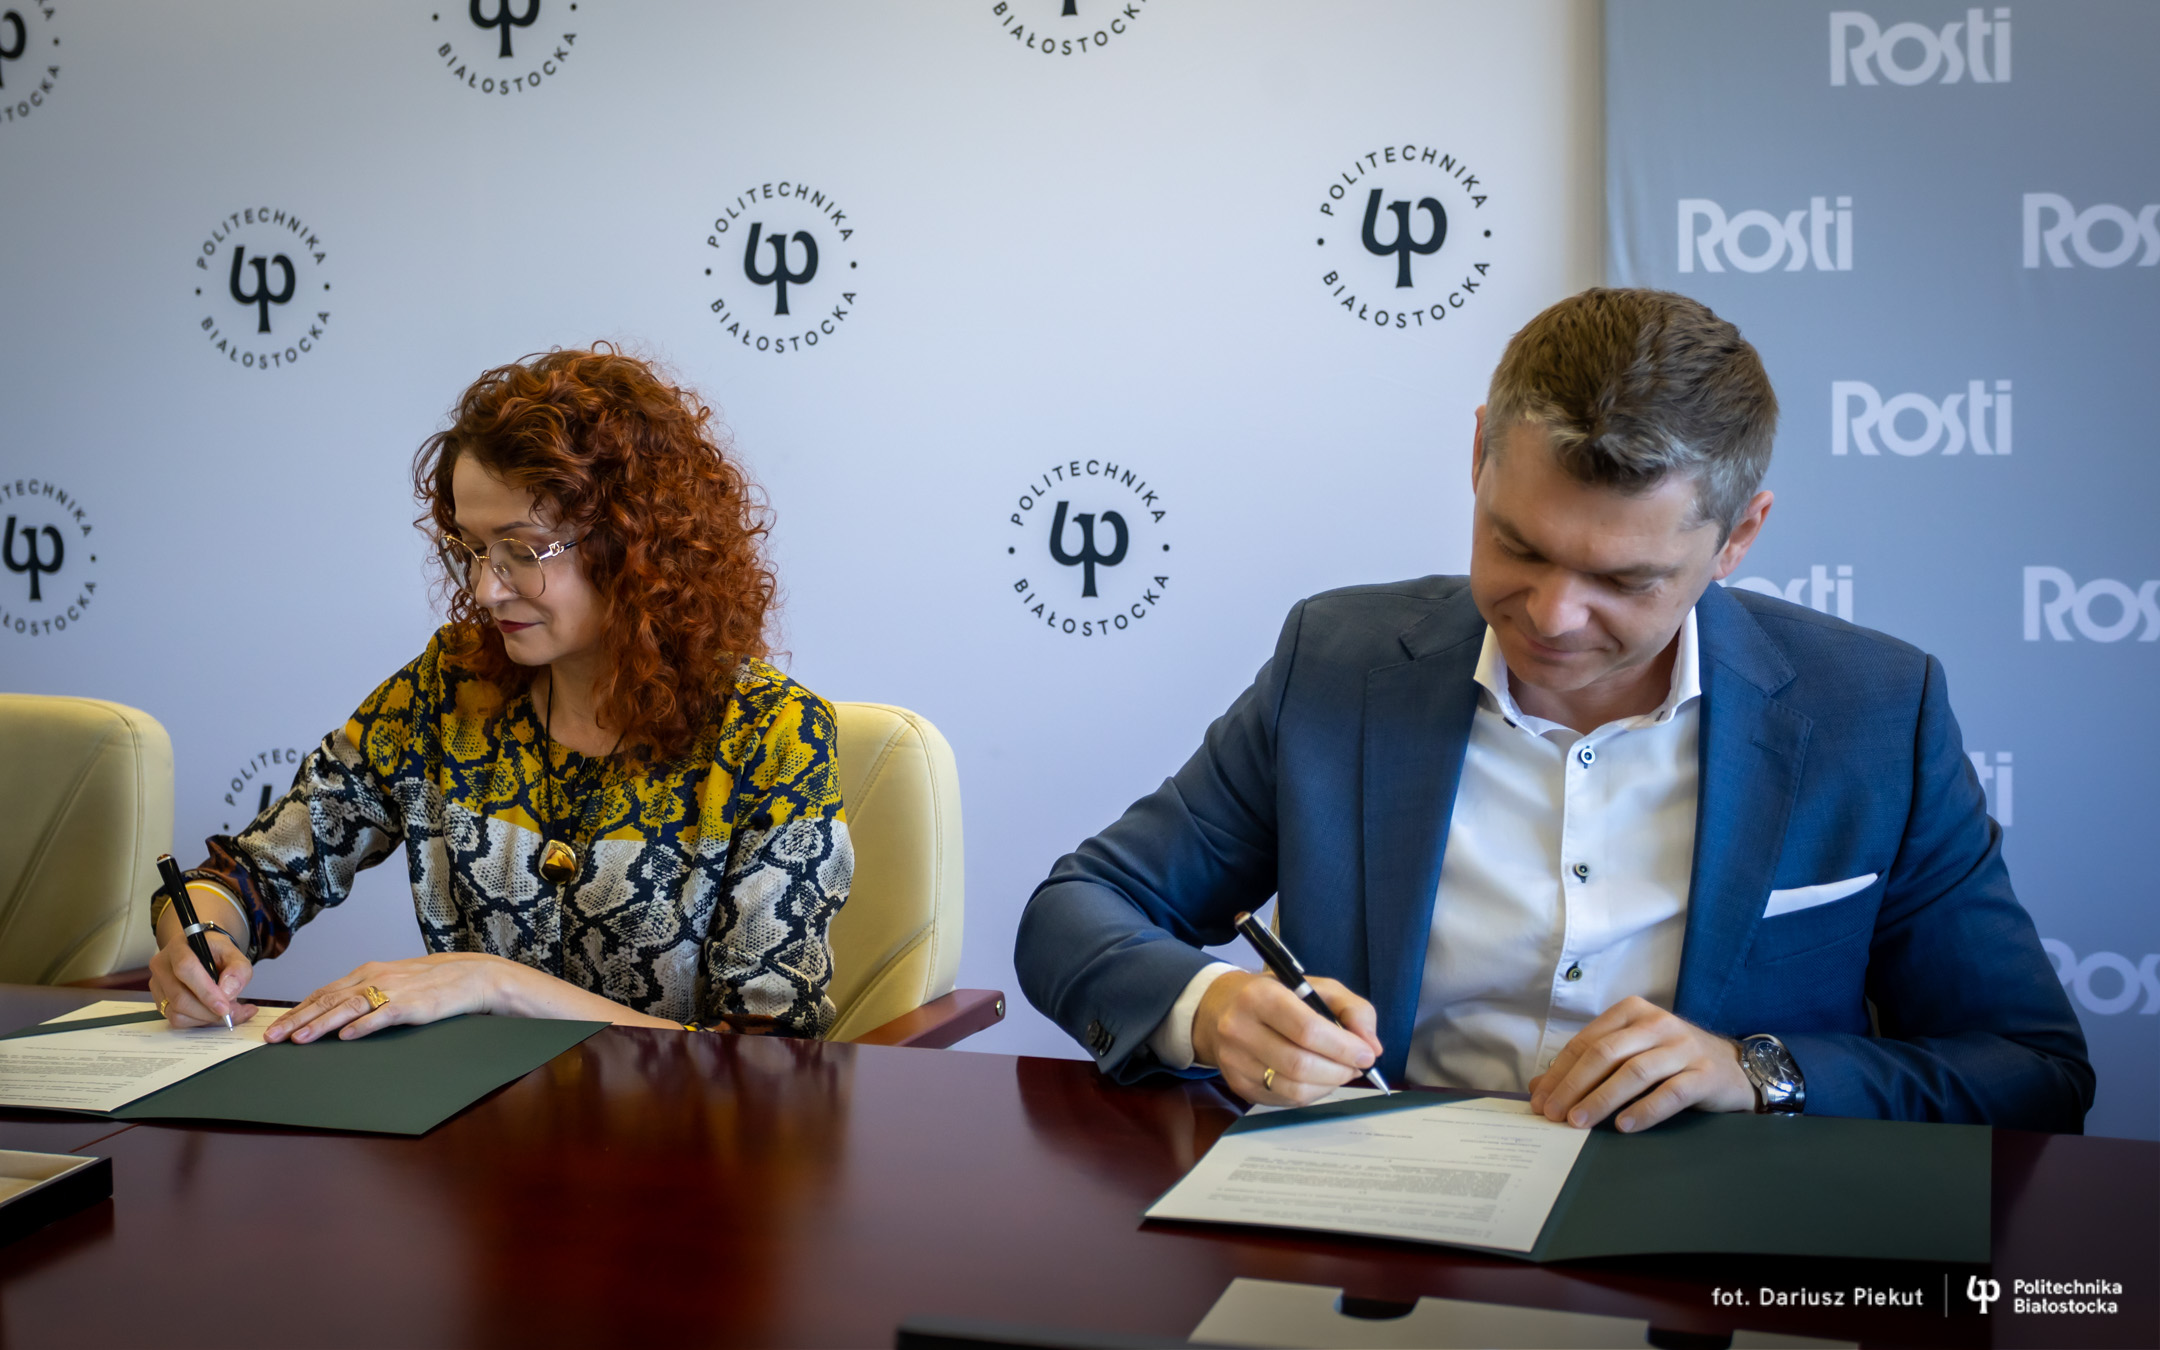 Podpisanie umowy z Rosti, fot. Dariusz Piekut, źródło: Politechnika Białostocka